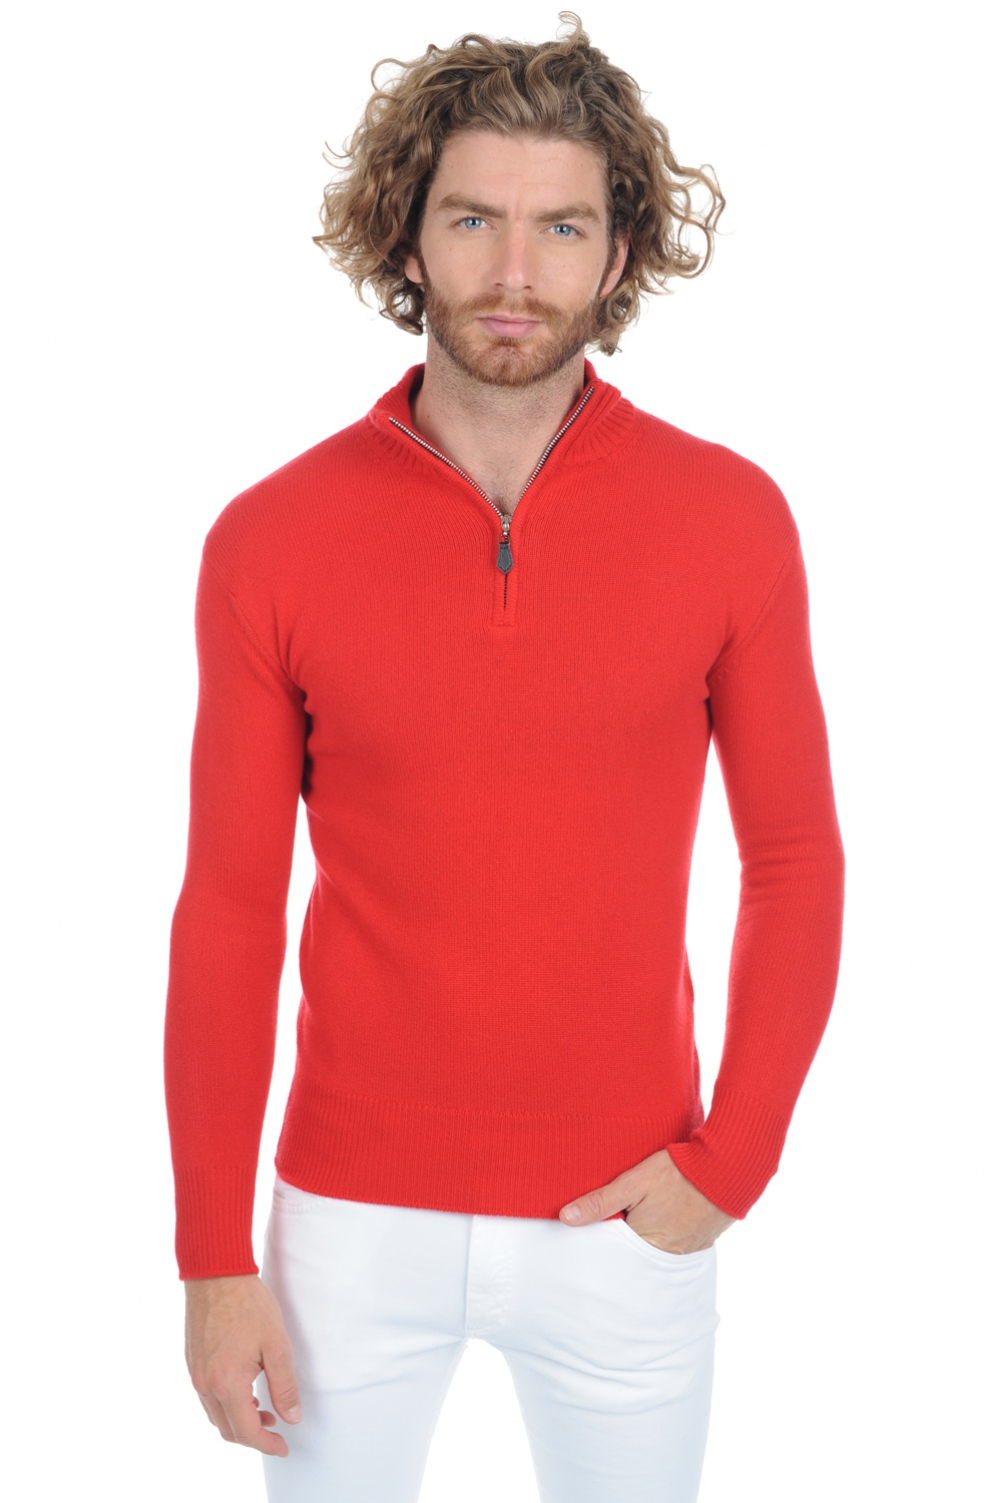 Cashmere men premium sweaters donovan premium tango red xl